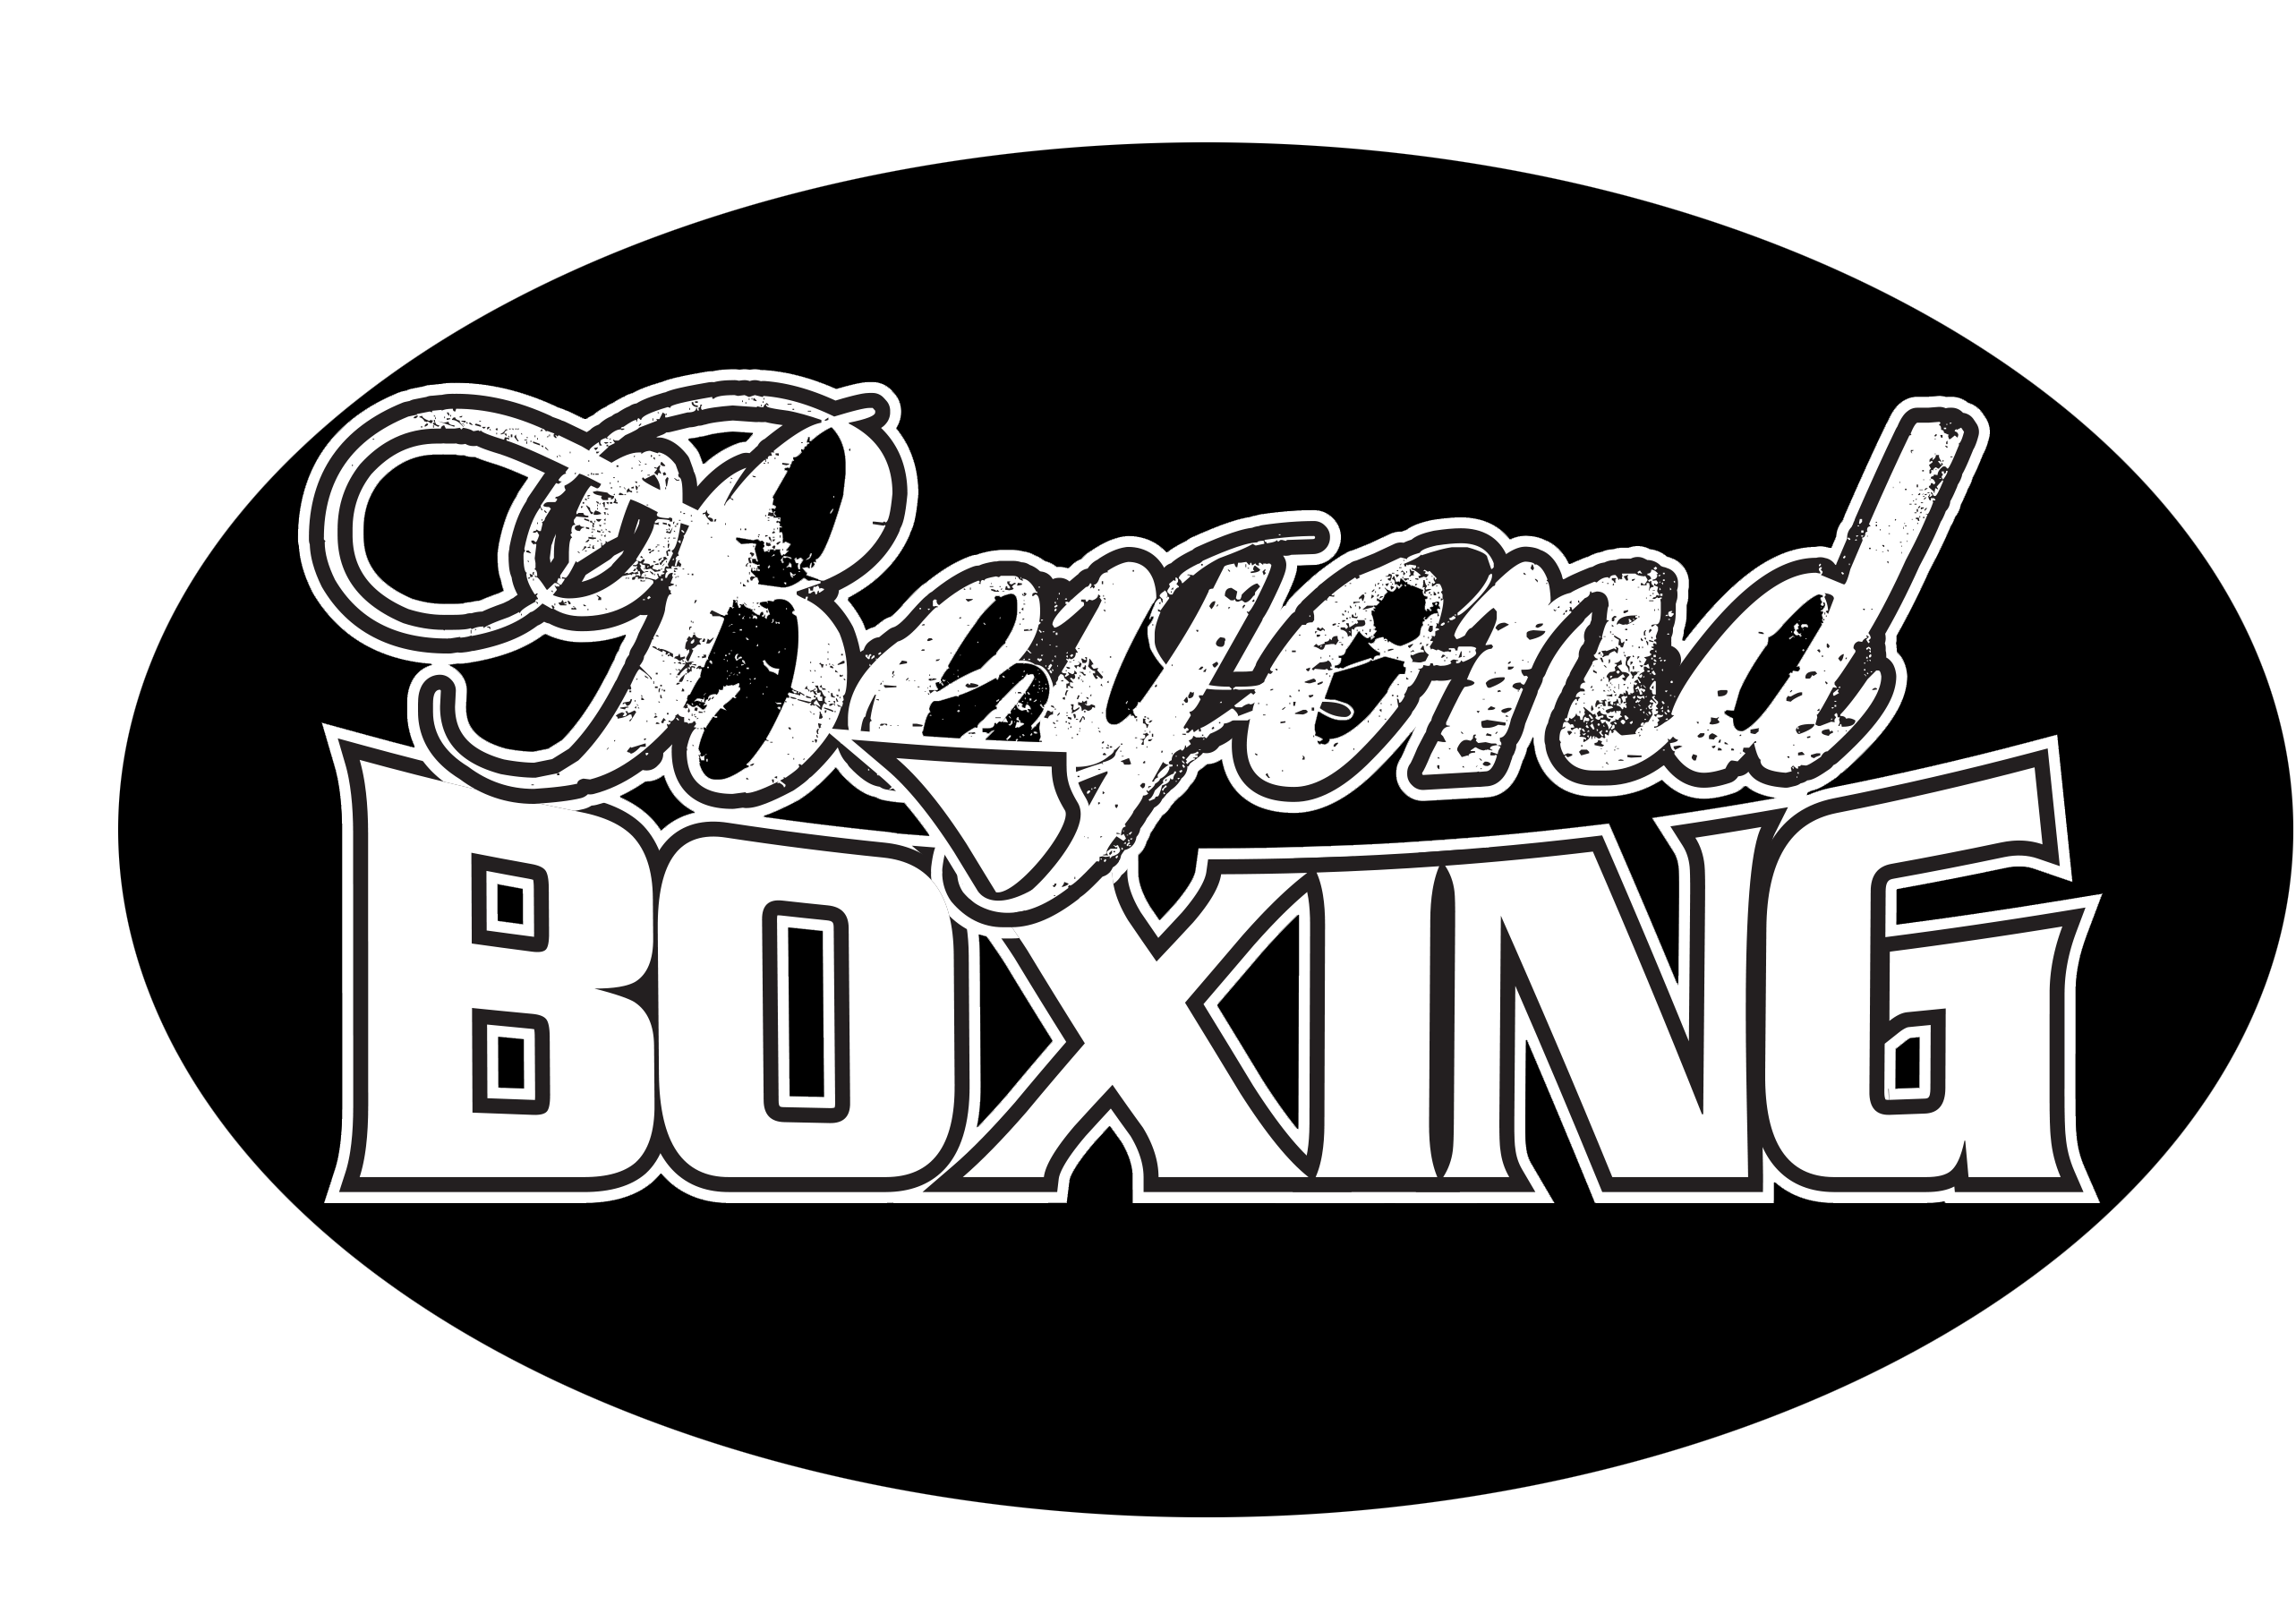 beyond_boxing